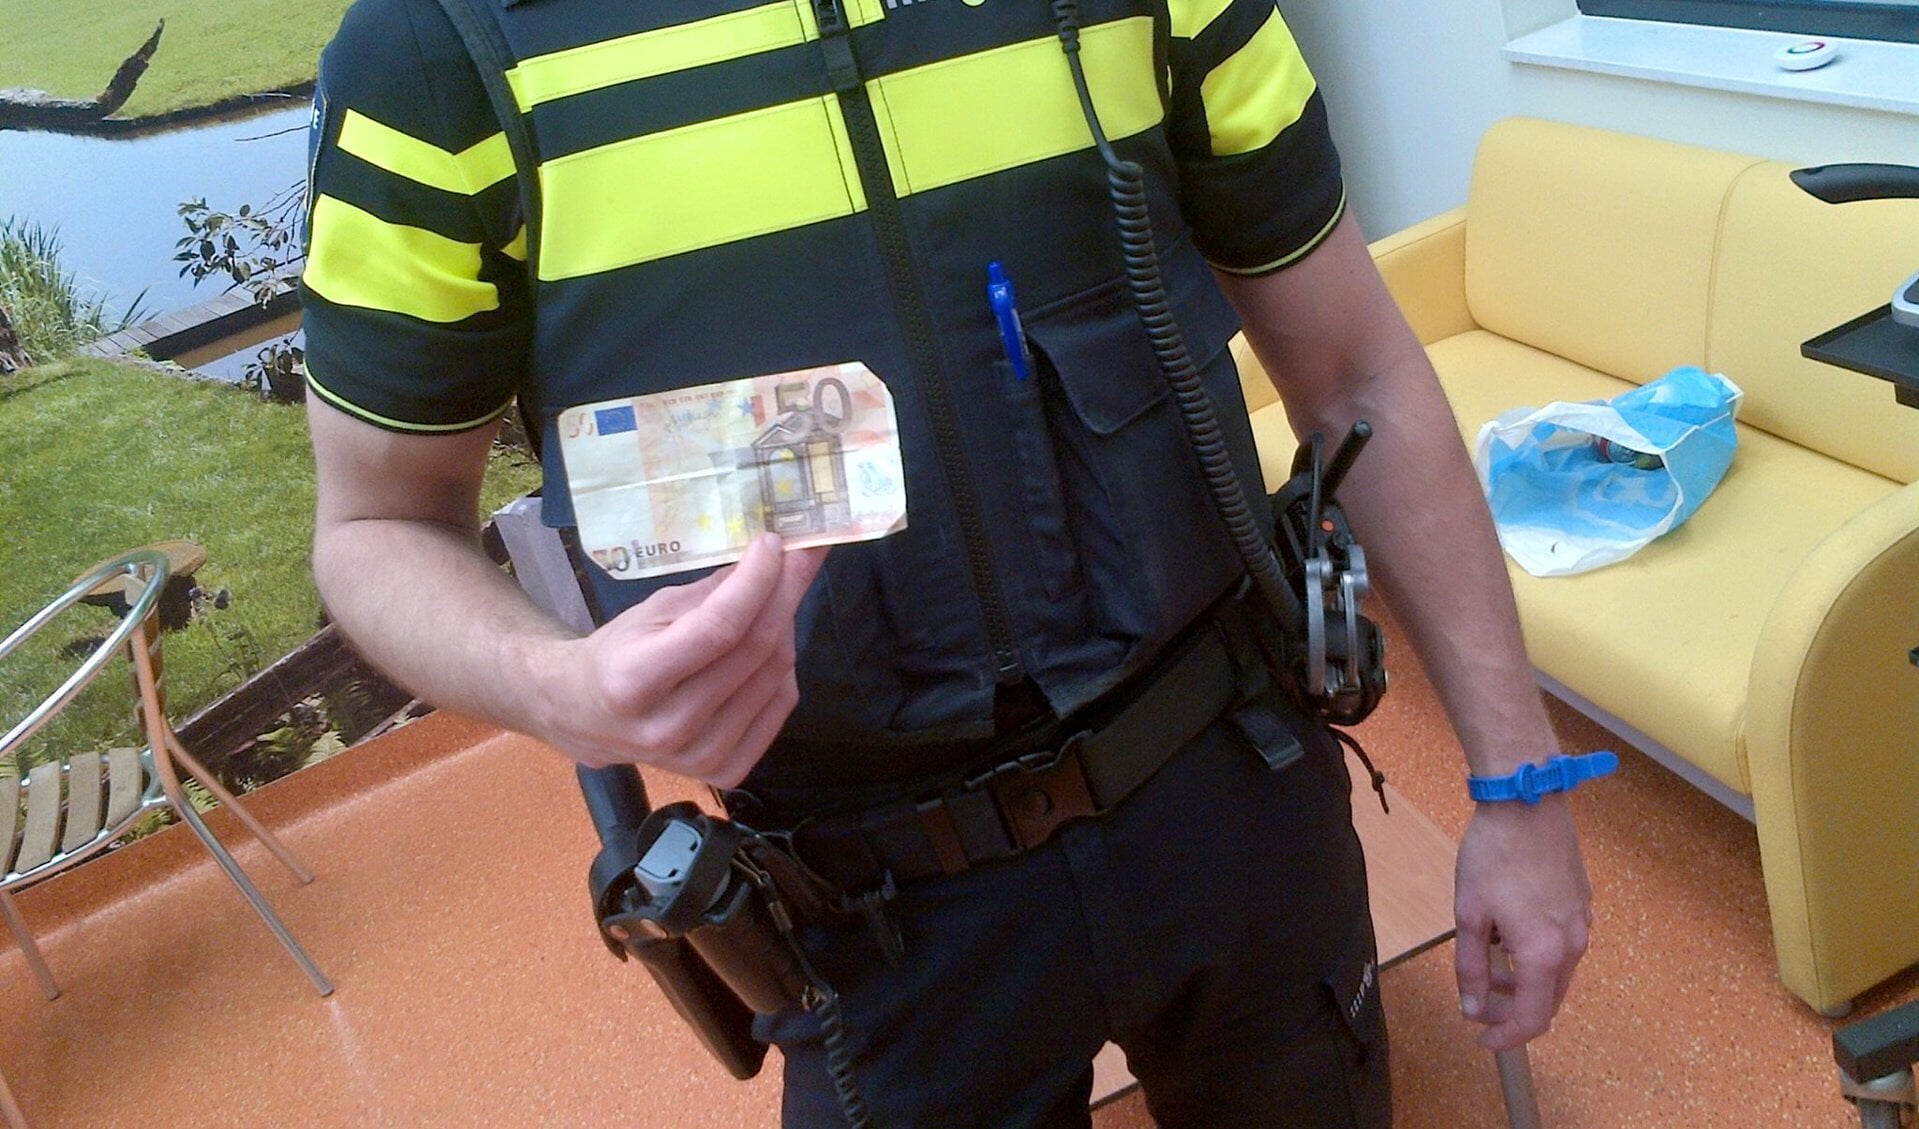 De politie nam zelf de proef op de som in Pijnacker en 'betaalde' met vals geld. Foto: Politie Pijnacker/Facebook